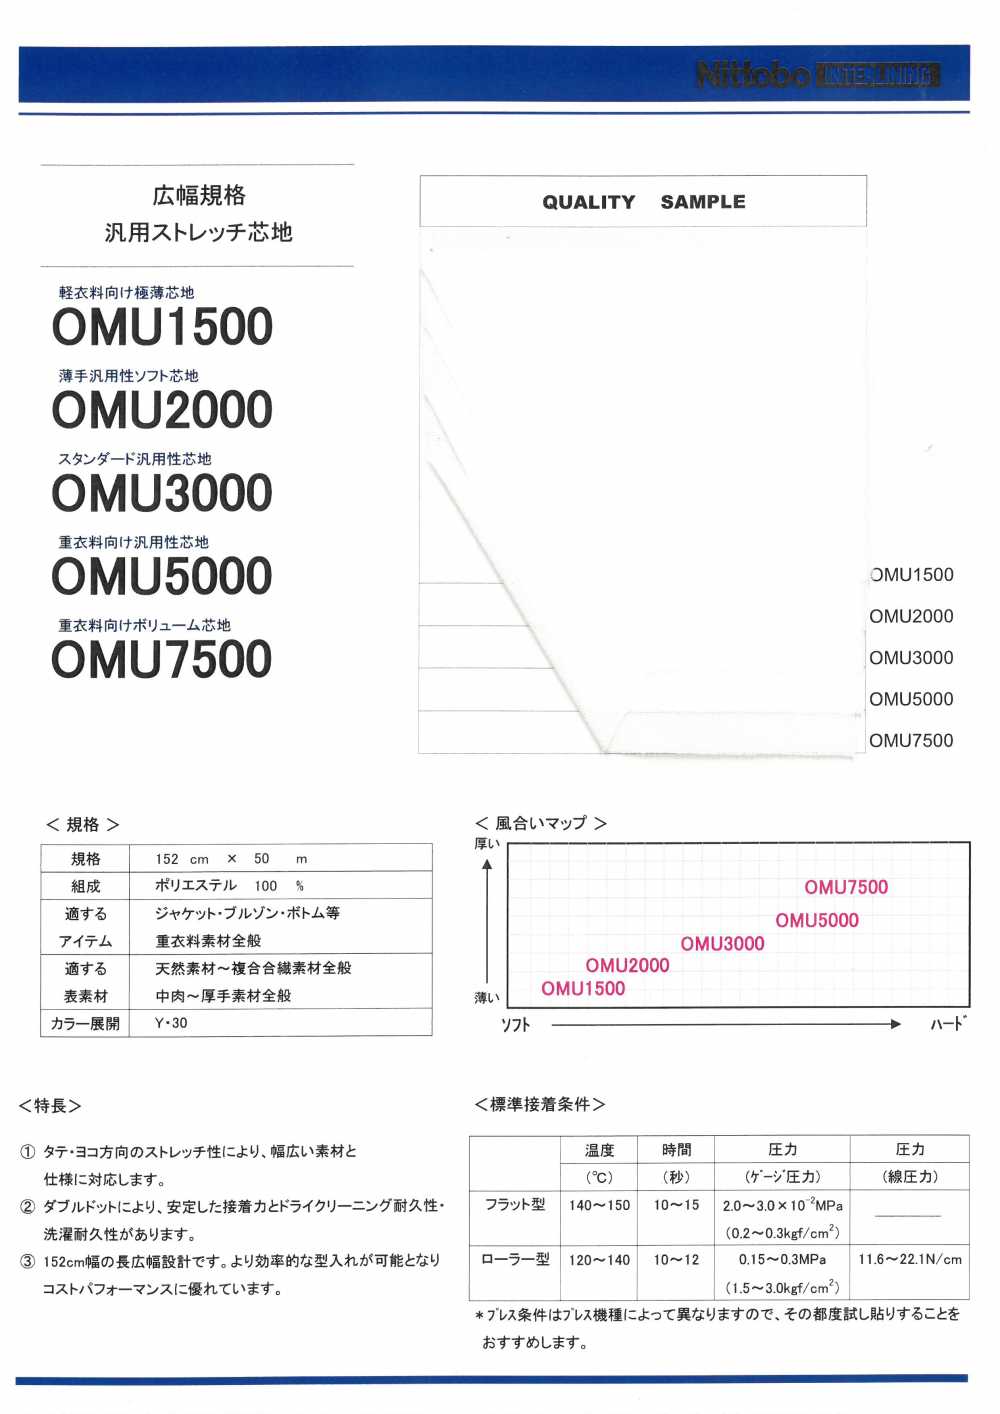 OMU2000 薄型多功能柔軟襯布 日東紡績